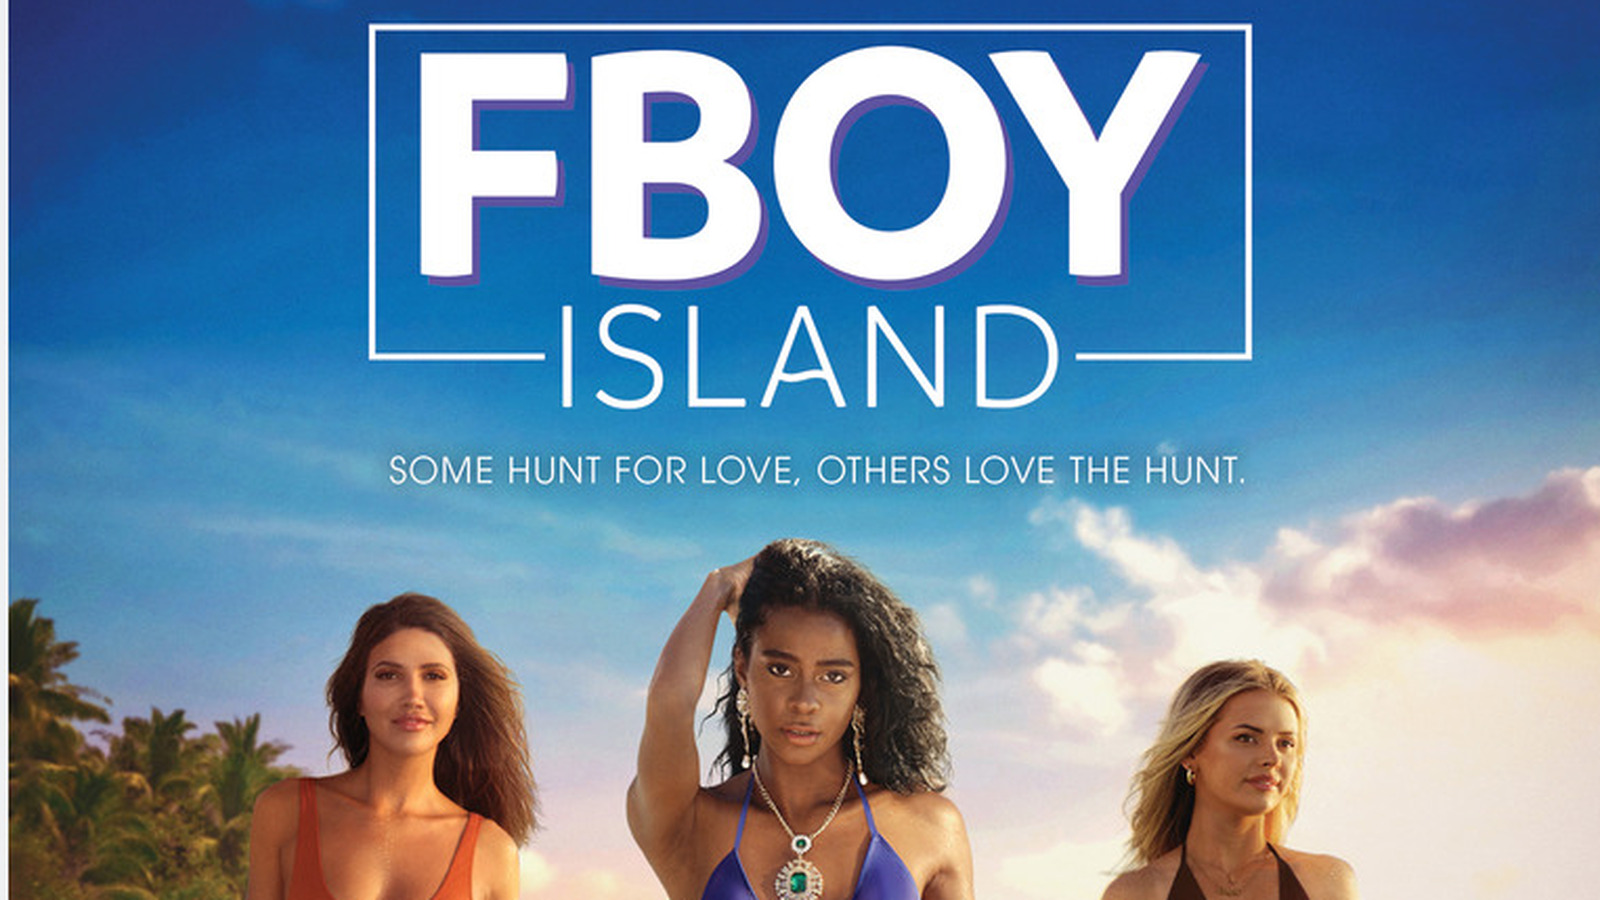  FBoy Island è una serie televisiva americana del 2021 in corso di produzione. La serie segue tre donne single mentre cercano l'amore su un'isola tropicale piena di uomini attraenti. Tuttavia, tra questi uomini ci sono anche dei 